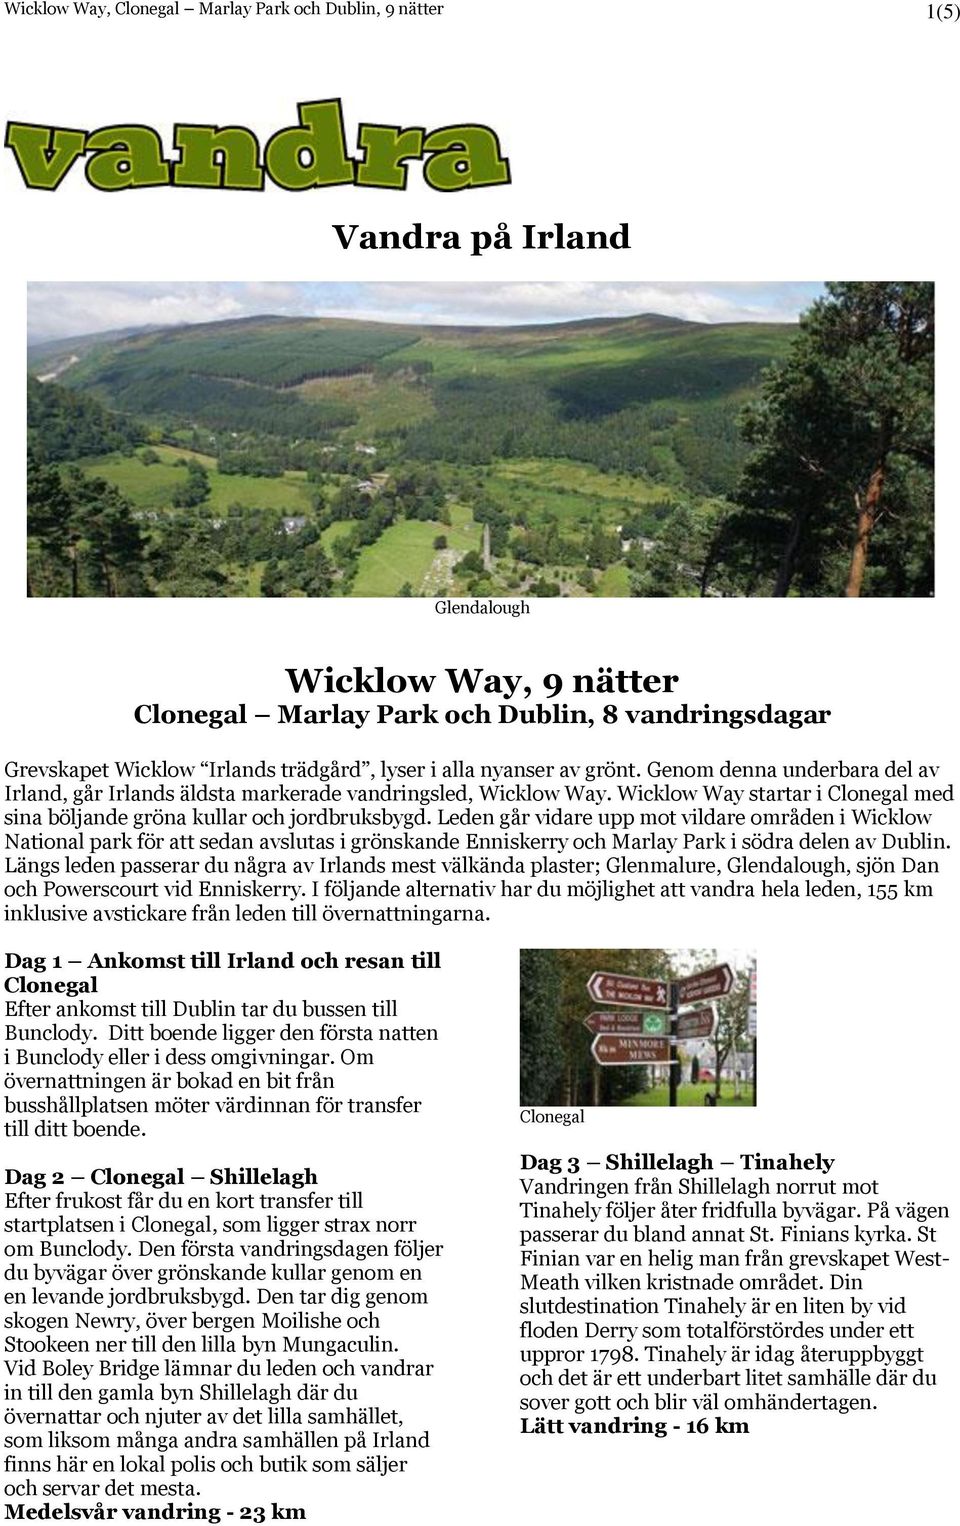 Wicklow Way startar i Clonegal med sina böljande gröna kullar och jordbruksbygd.